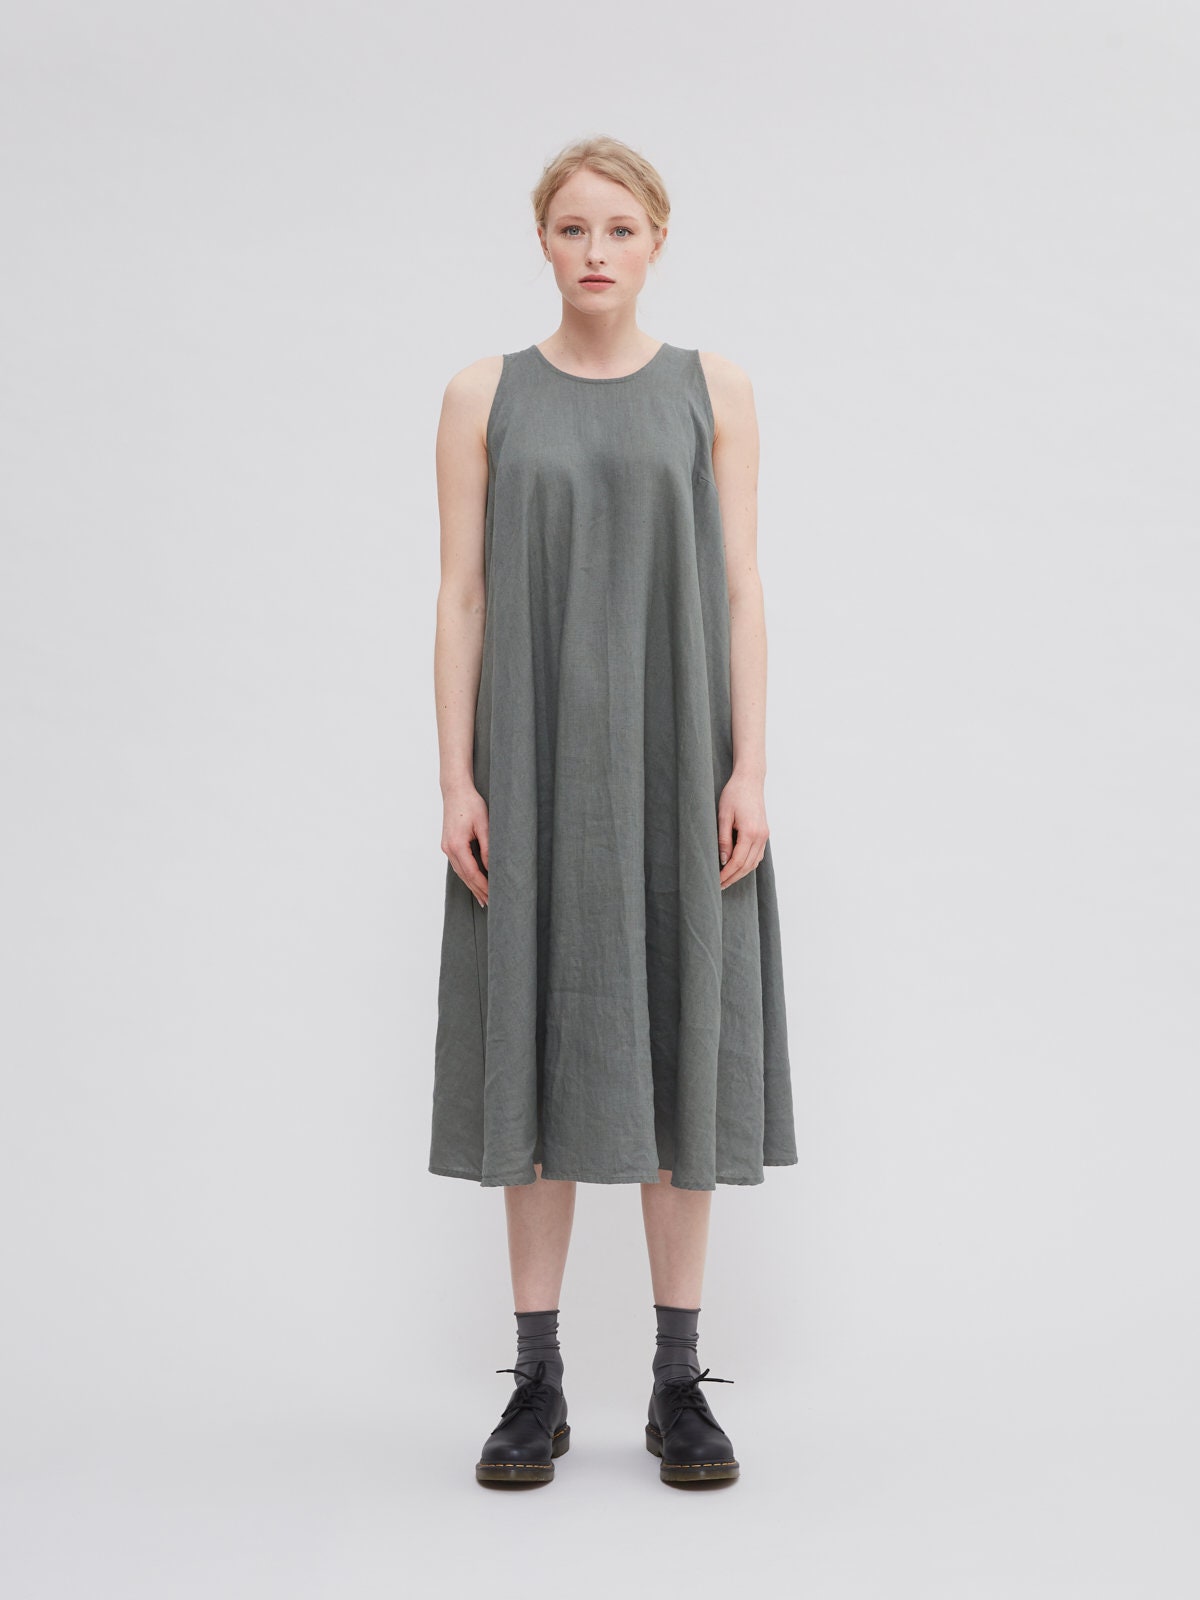 Sahara Pine Green Maxi Linen Dress Beach Linen Dress | Etsy